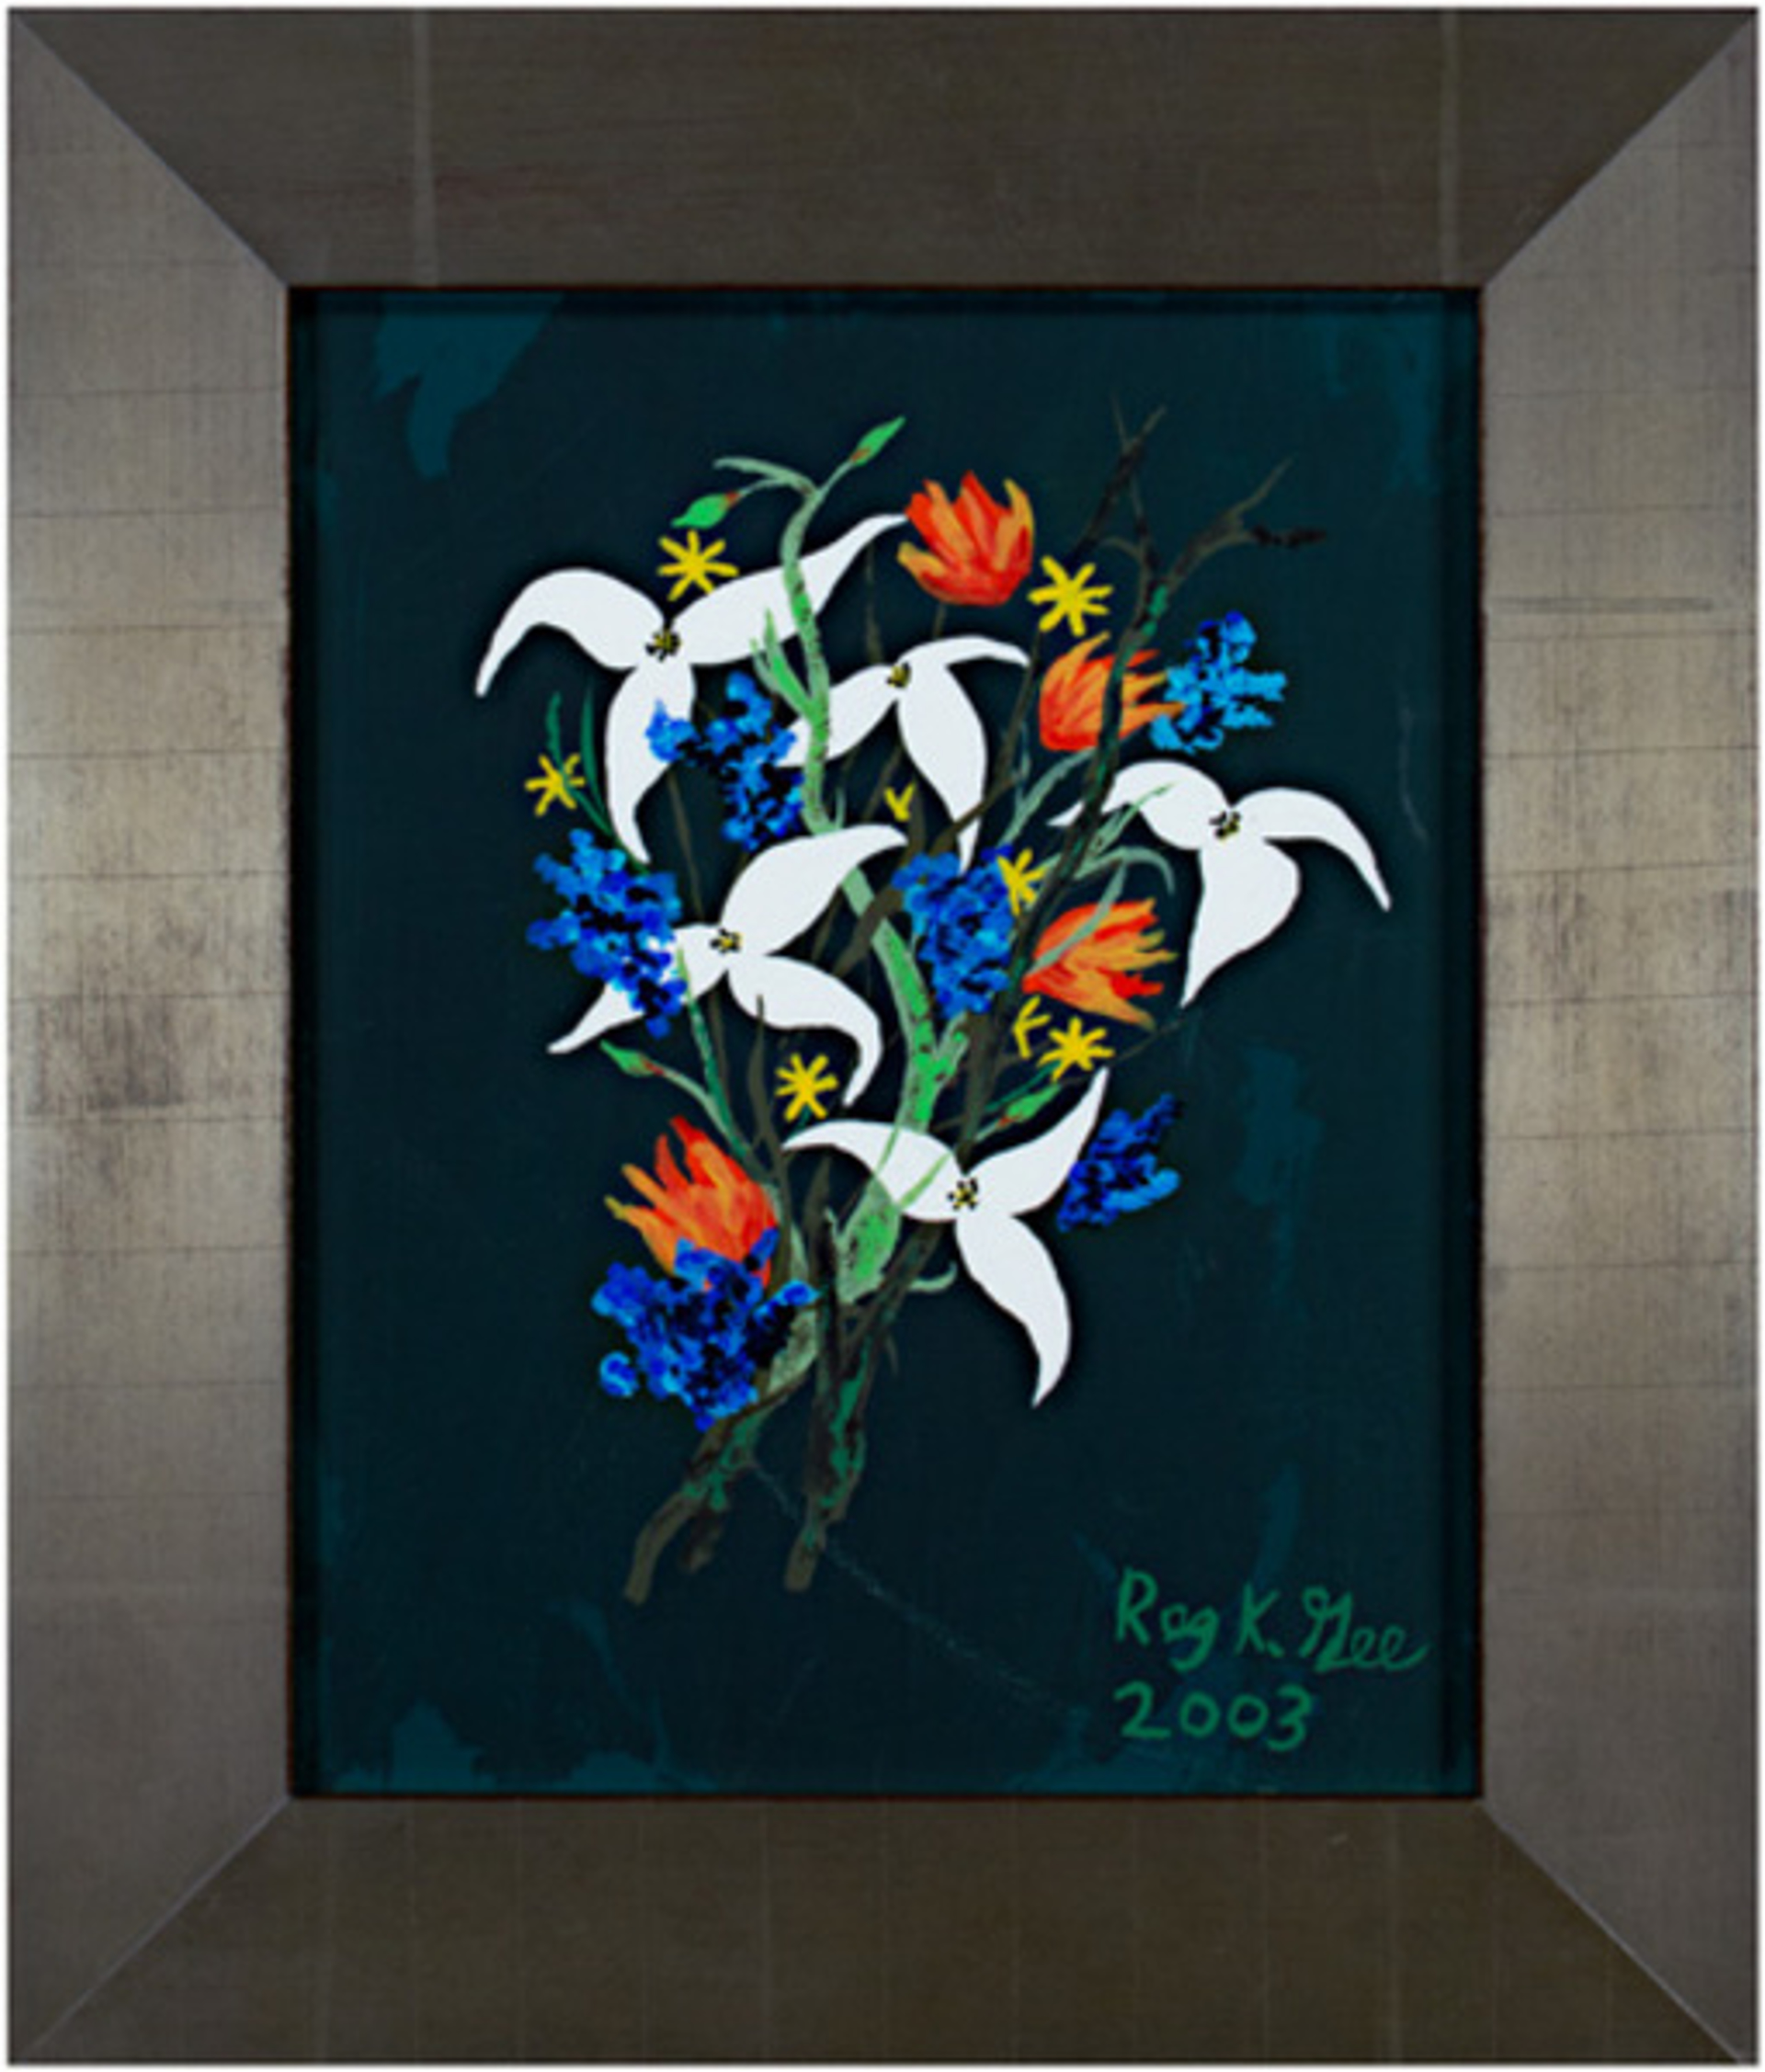 White & Blue Flowers on Dark Green Background by Reginald K. Gee